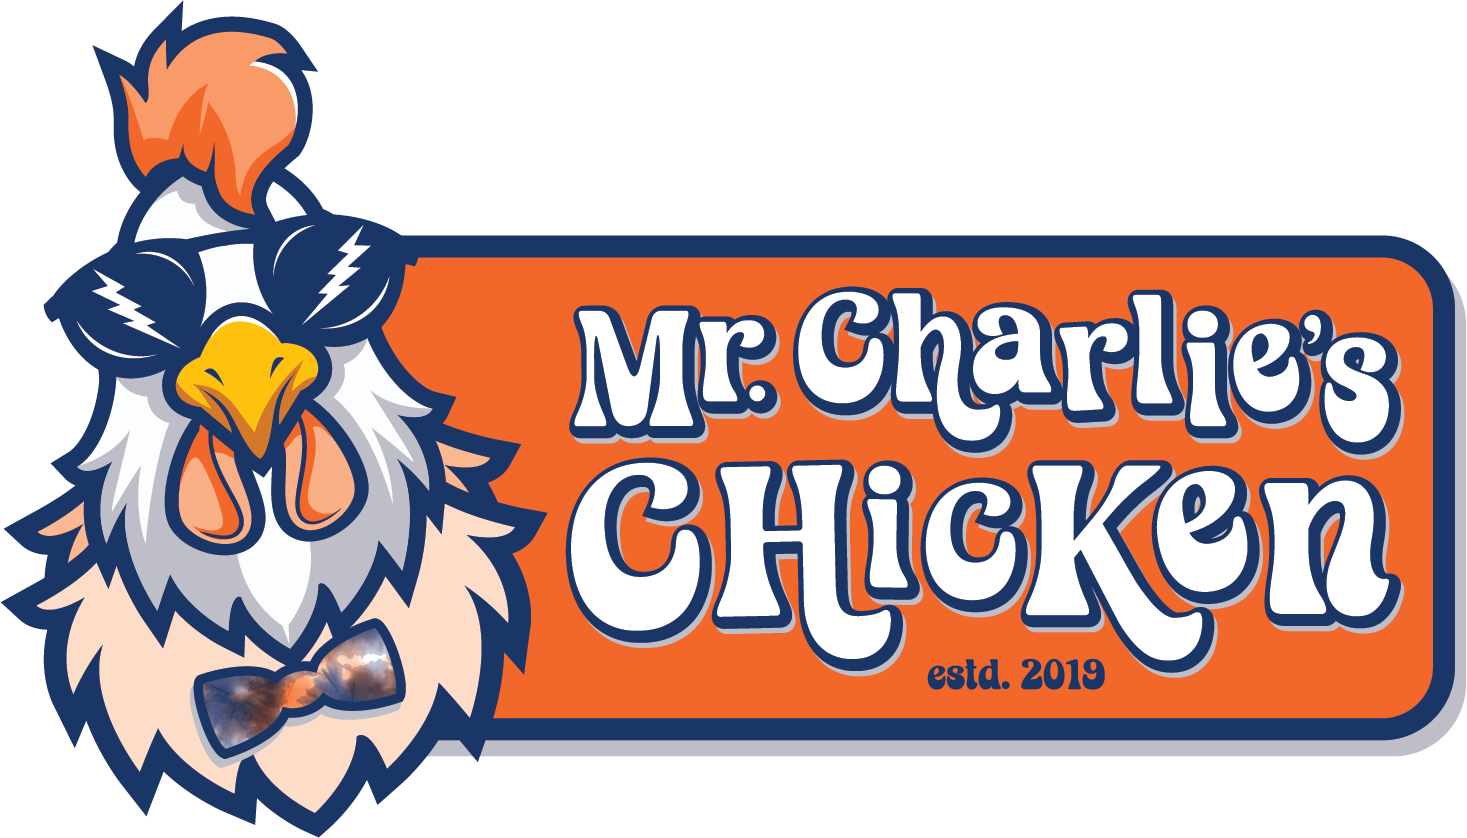 Mr Charlie's Chicken - Chuck